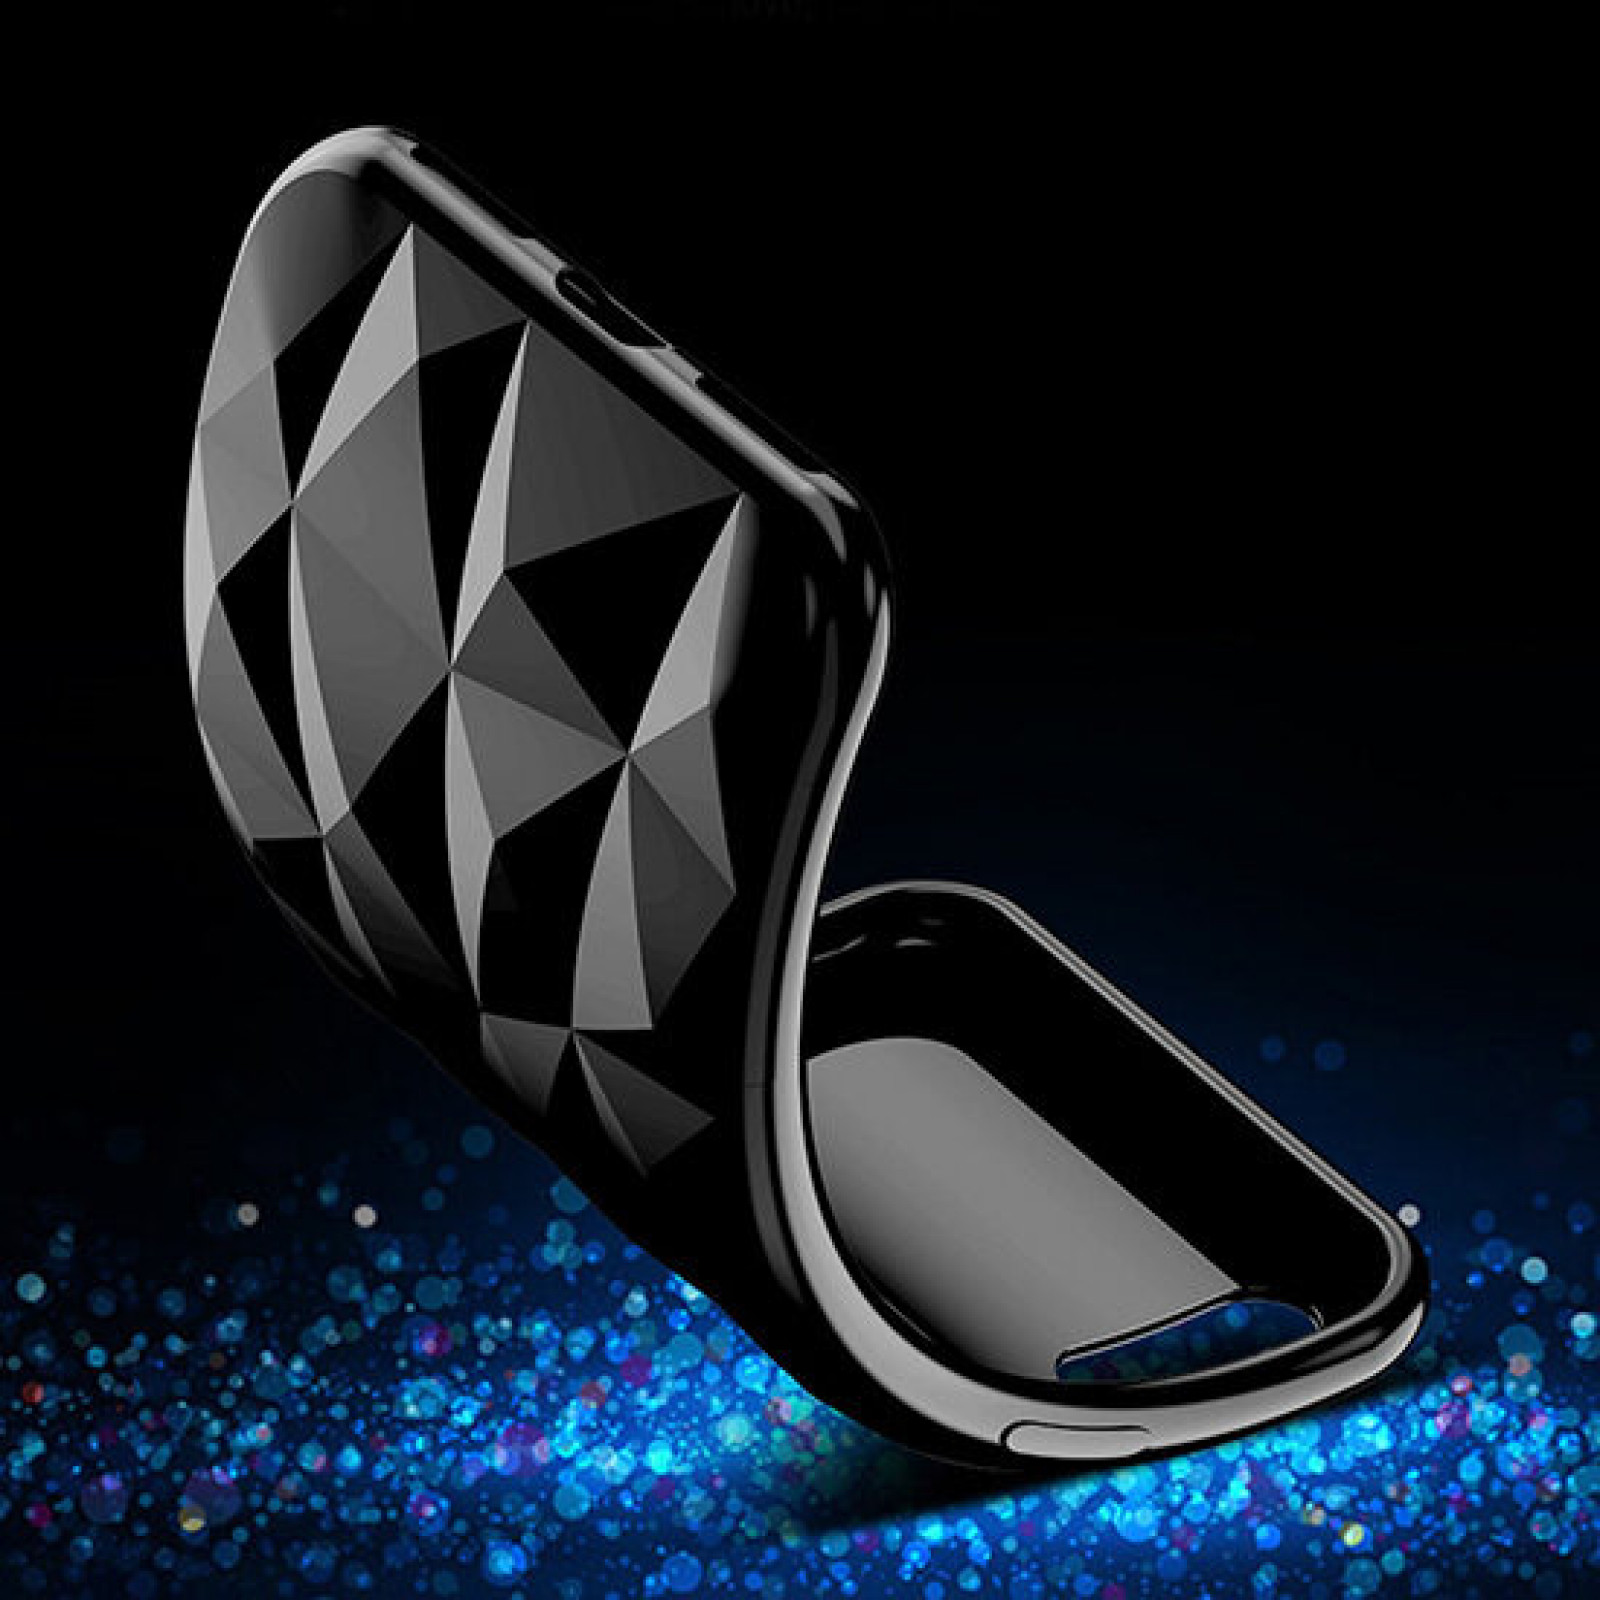 Гръб Prism Diamond TPU Case за Huawei P30 Pro - Черен